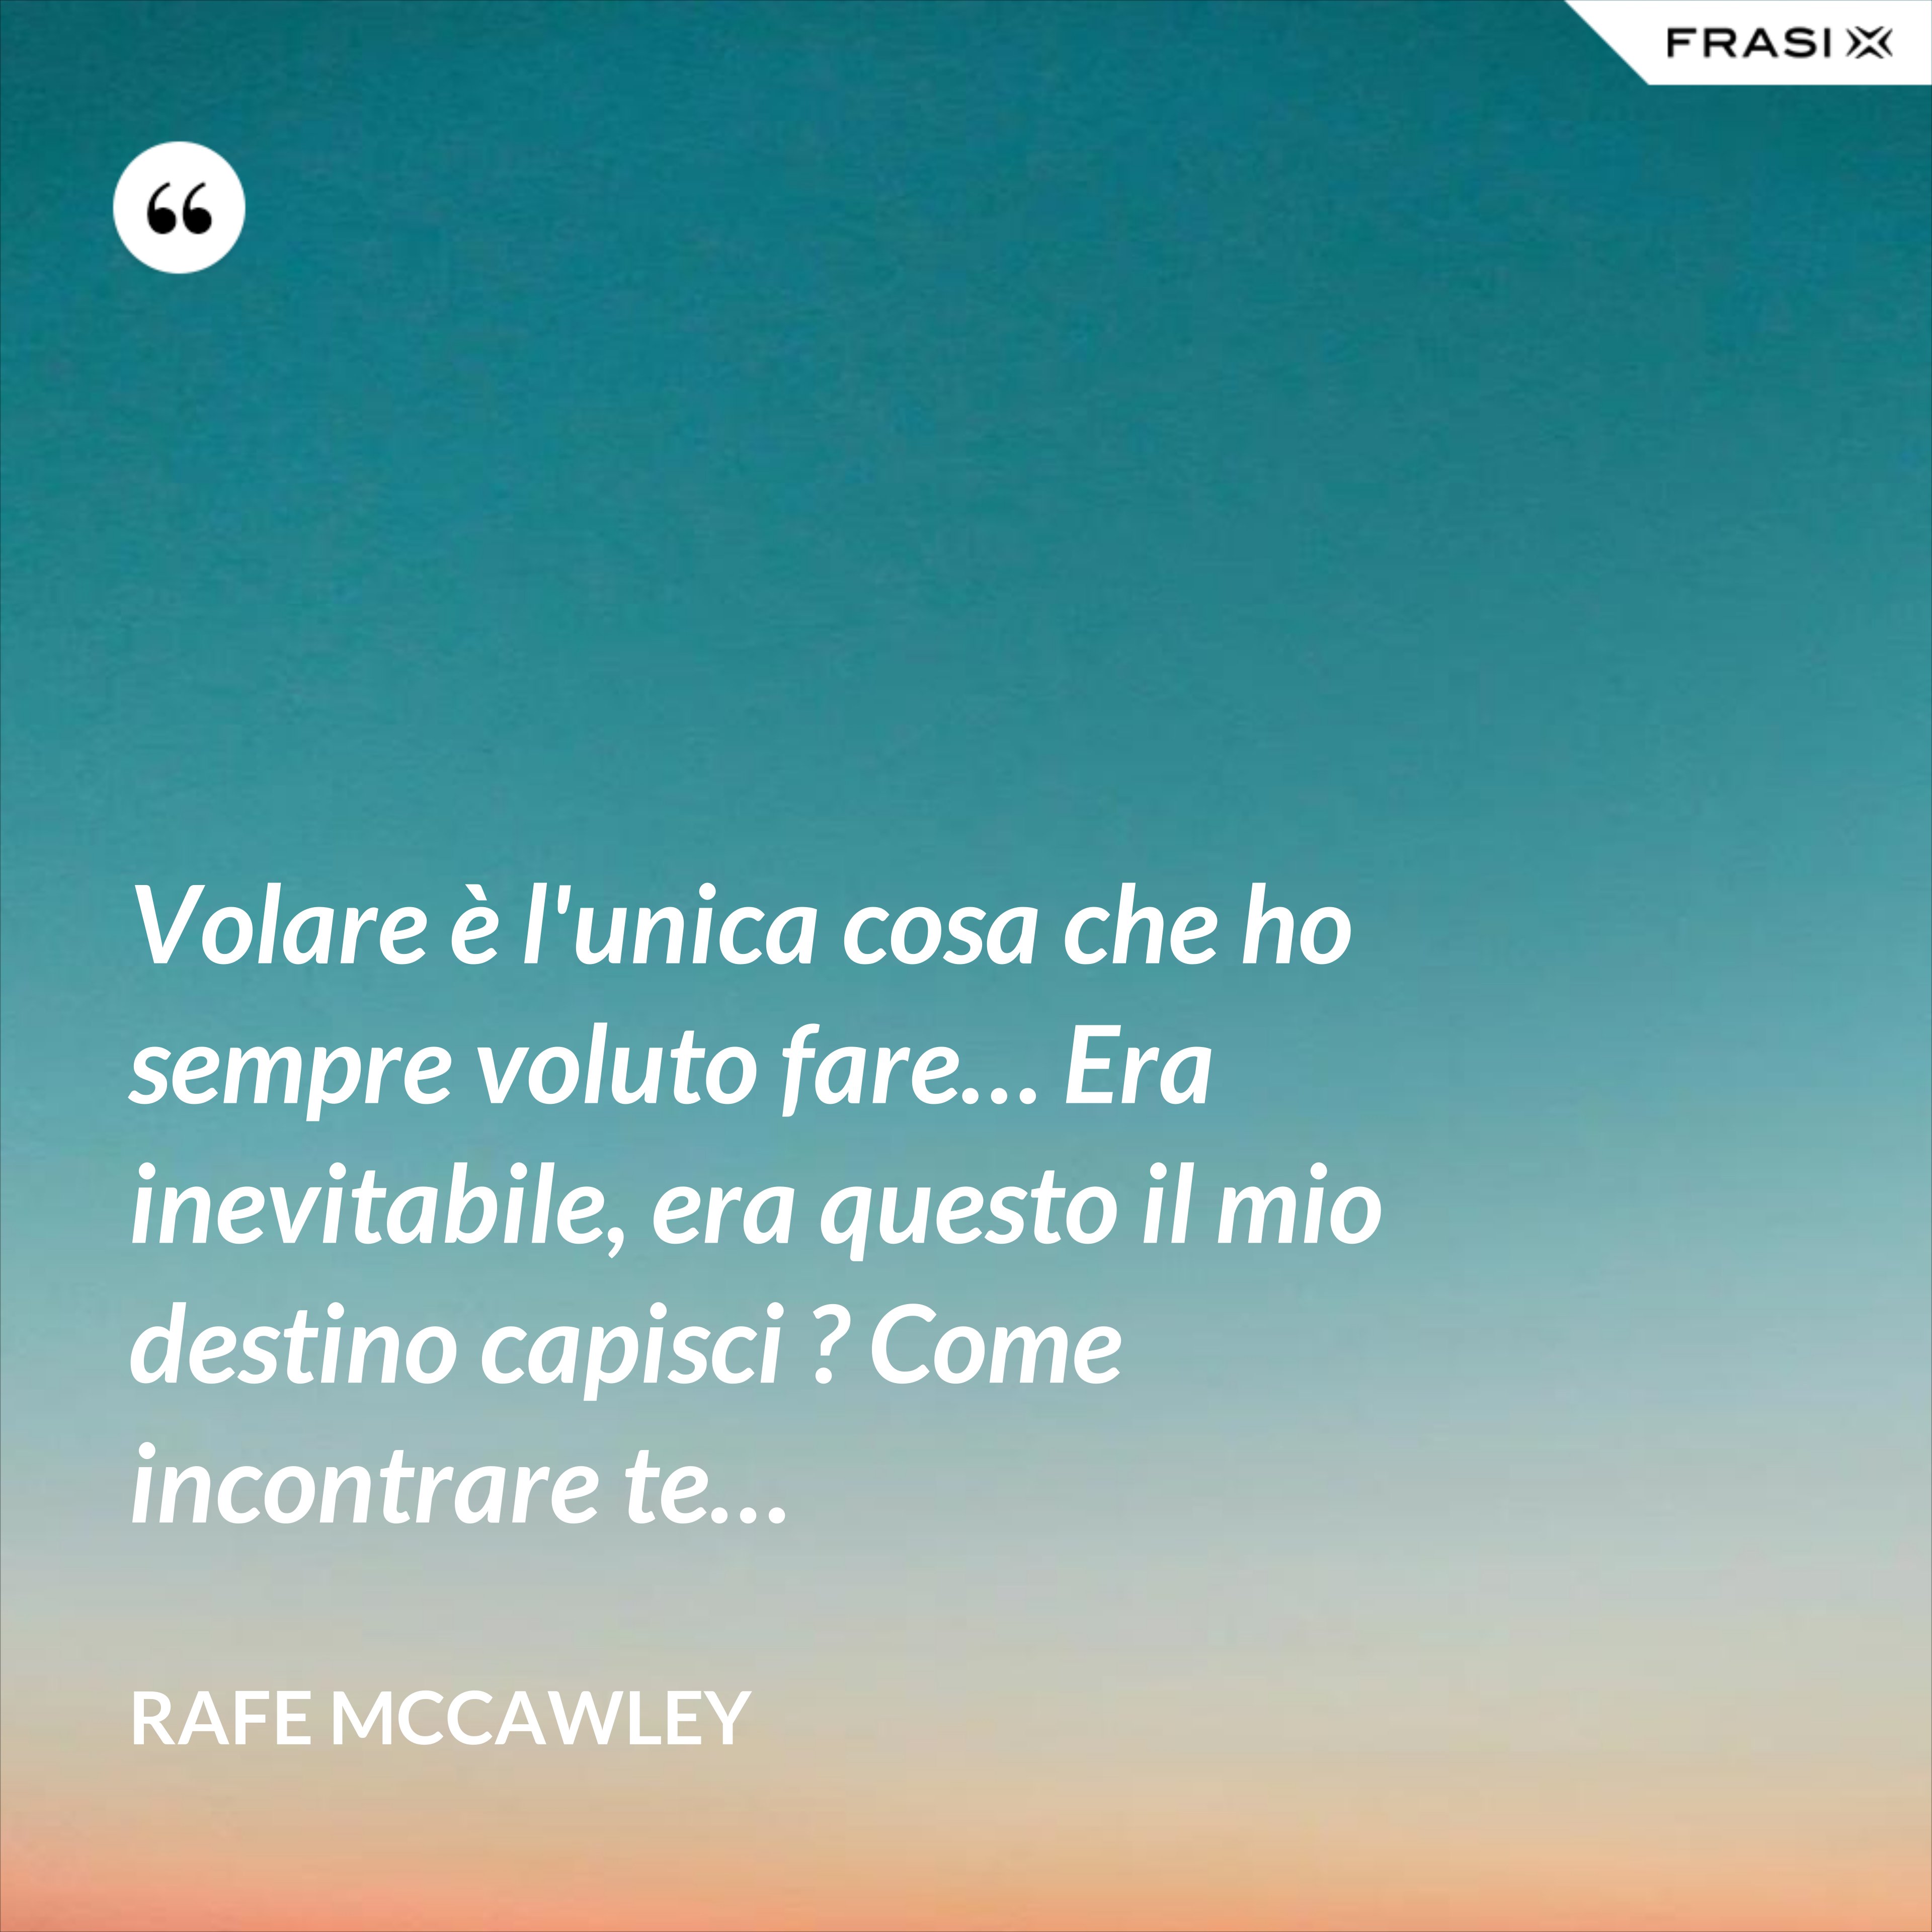 Volare è l'unica cosa che ho sempre voluto fare… Era inevitabile, era questo il mio destino capisci ? Come incontrare te… - Rafe McCawley